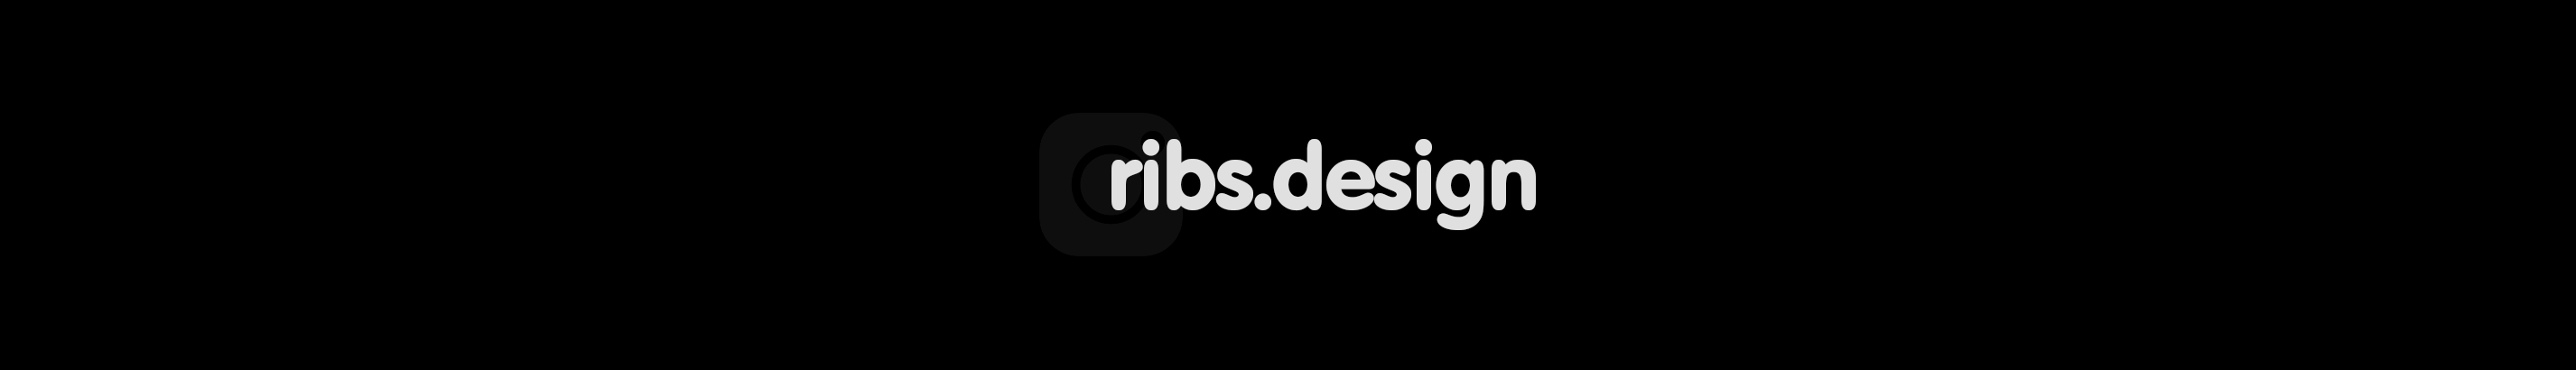 RIBS DESIGN's profile banner